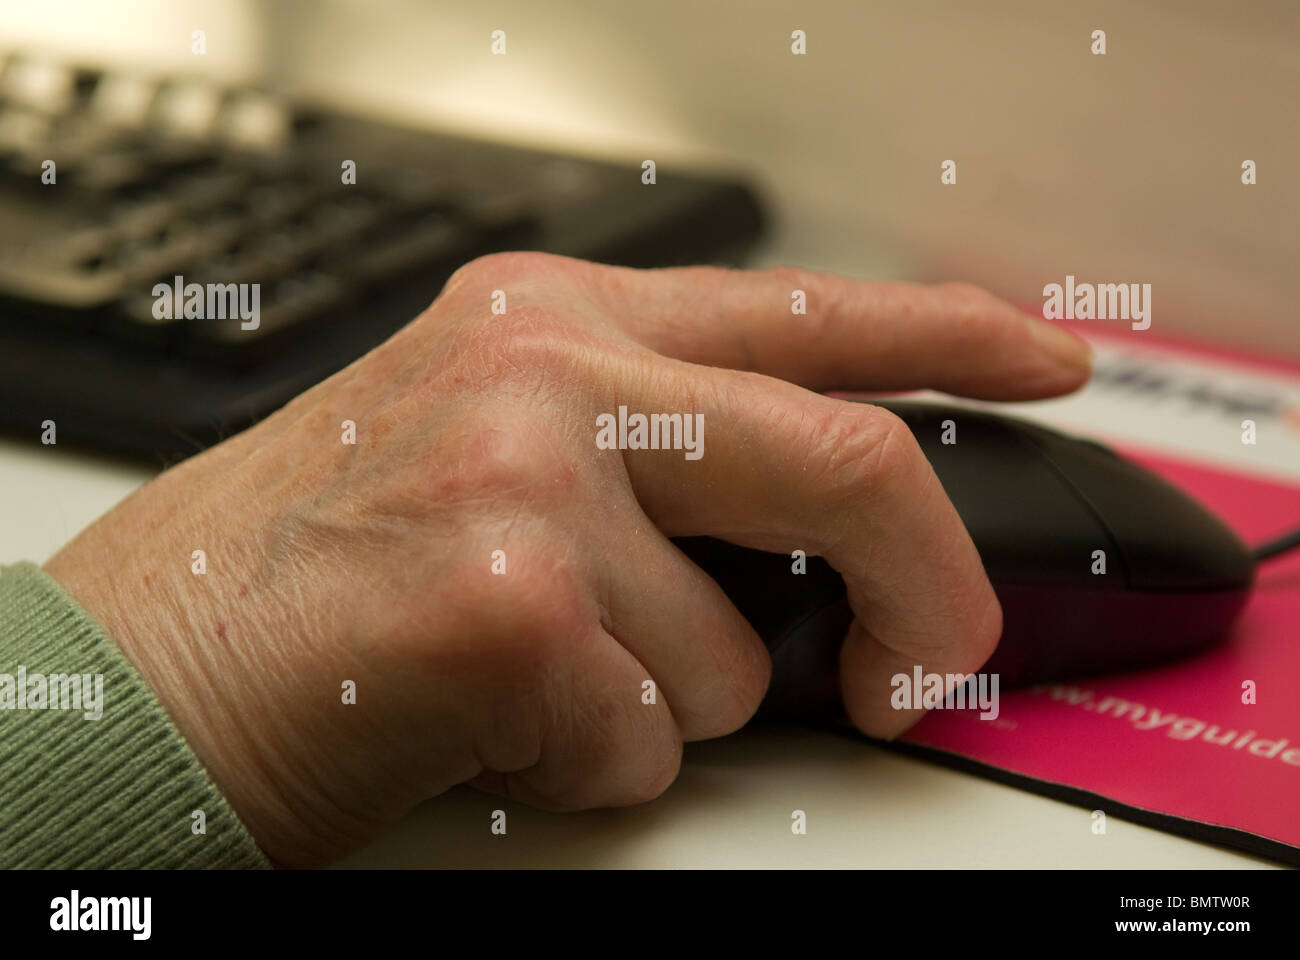 Donna anziana con una mano sul mouse mentre si naviga in internet, Peckham, Londra, Regno Unito. Foto Stock